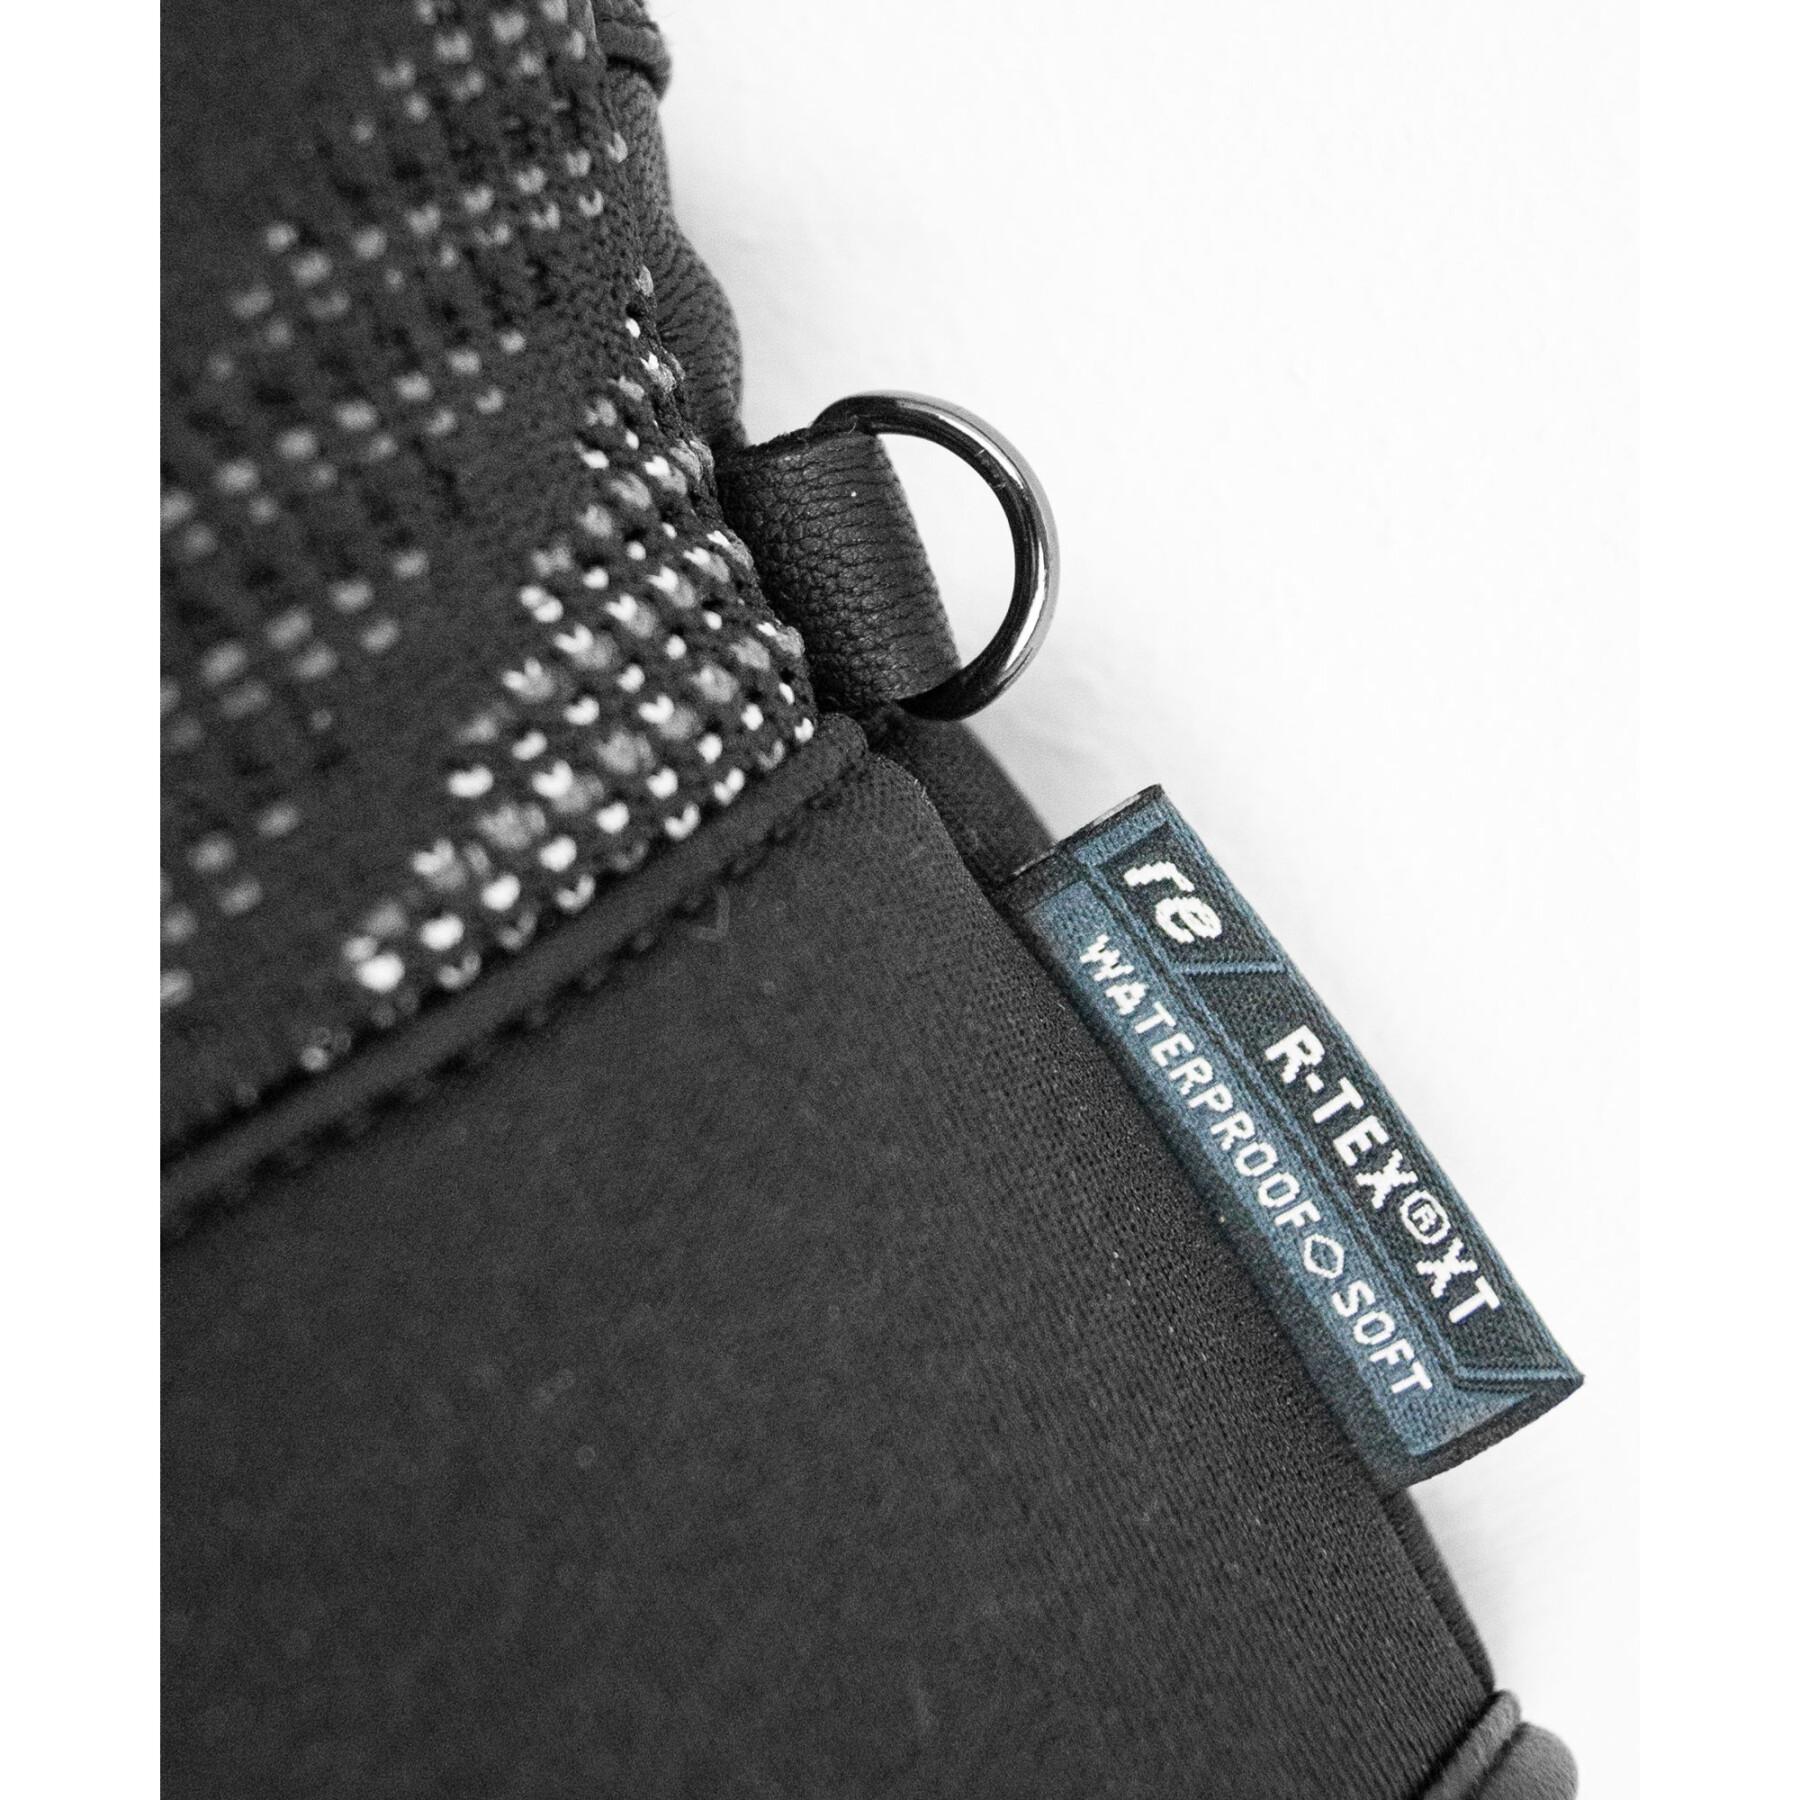 Handschuhe Reusch Re:Knit Eclipse R-TEX® XT